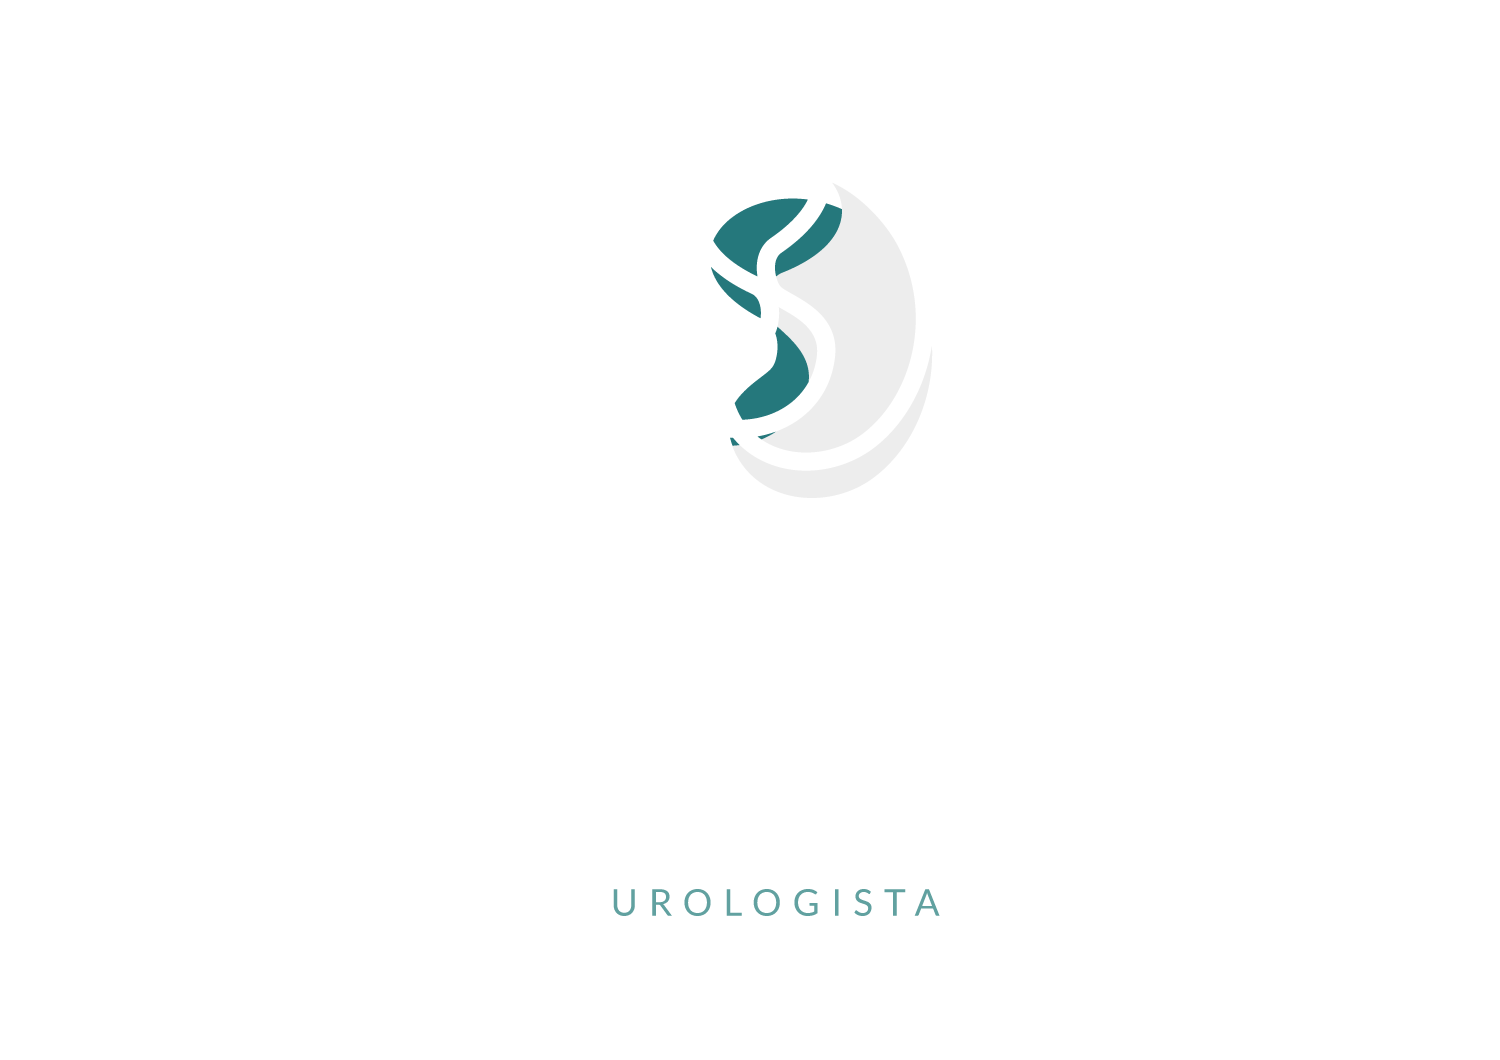 Dr. Gilberto